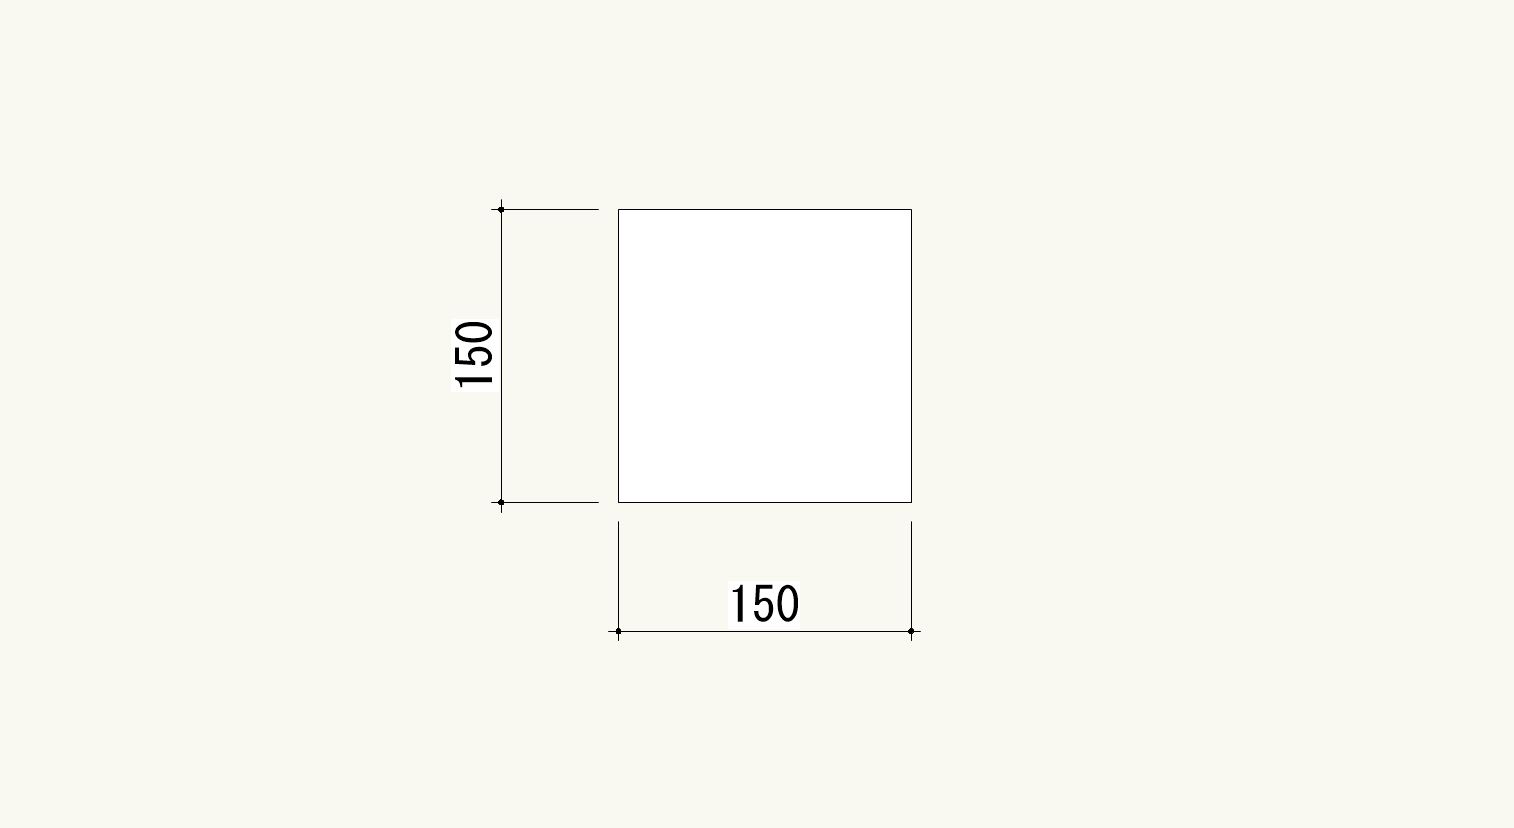 Vectorworksの寸法線の設定方法。寸法線の端を黒丸にする作り方